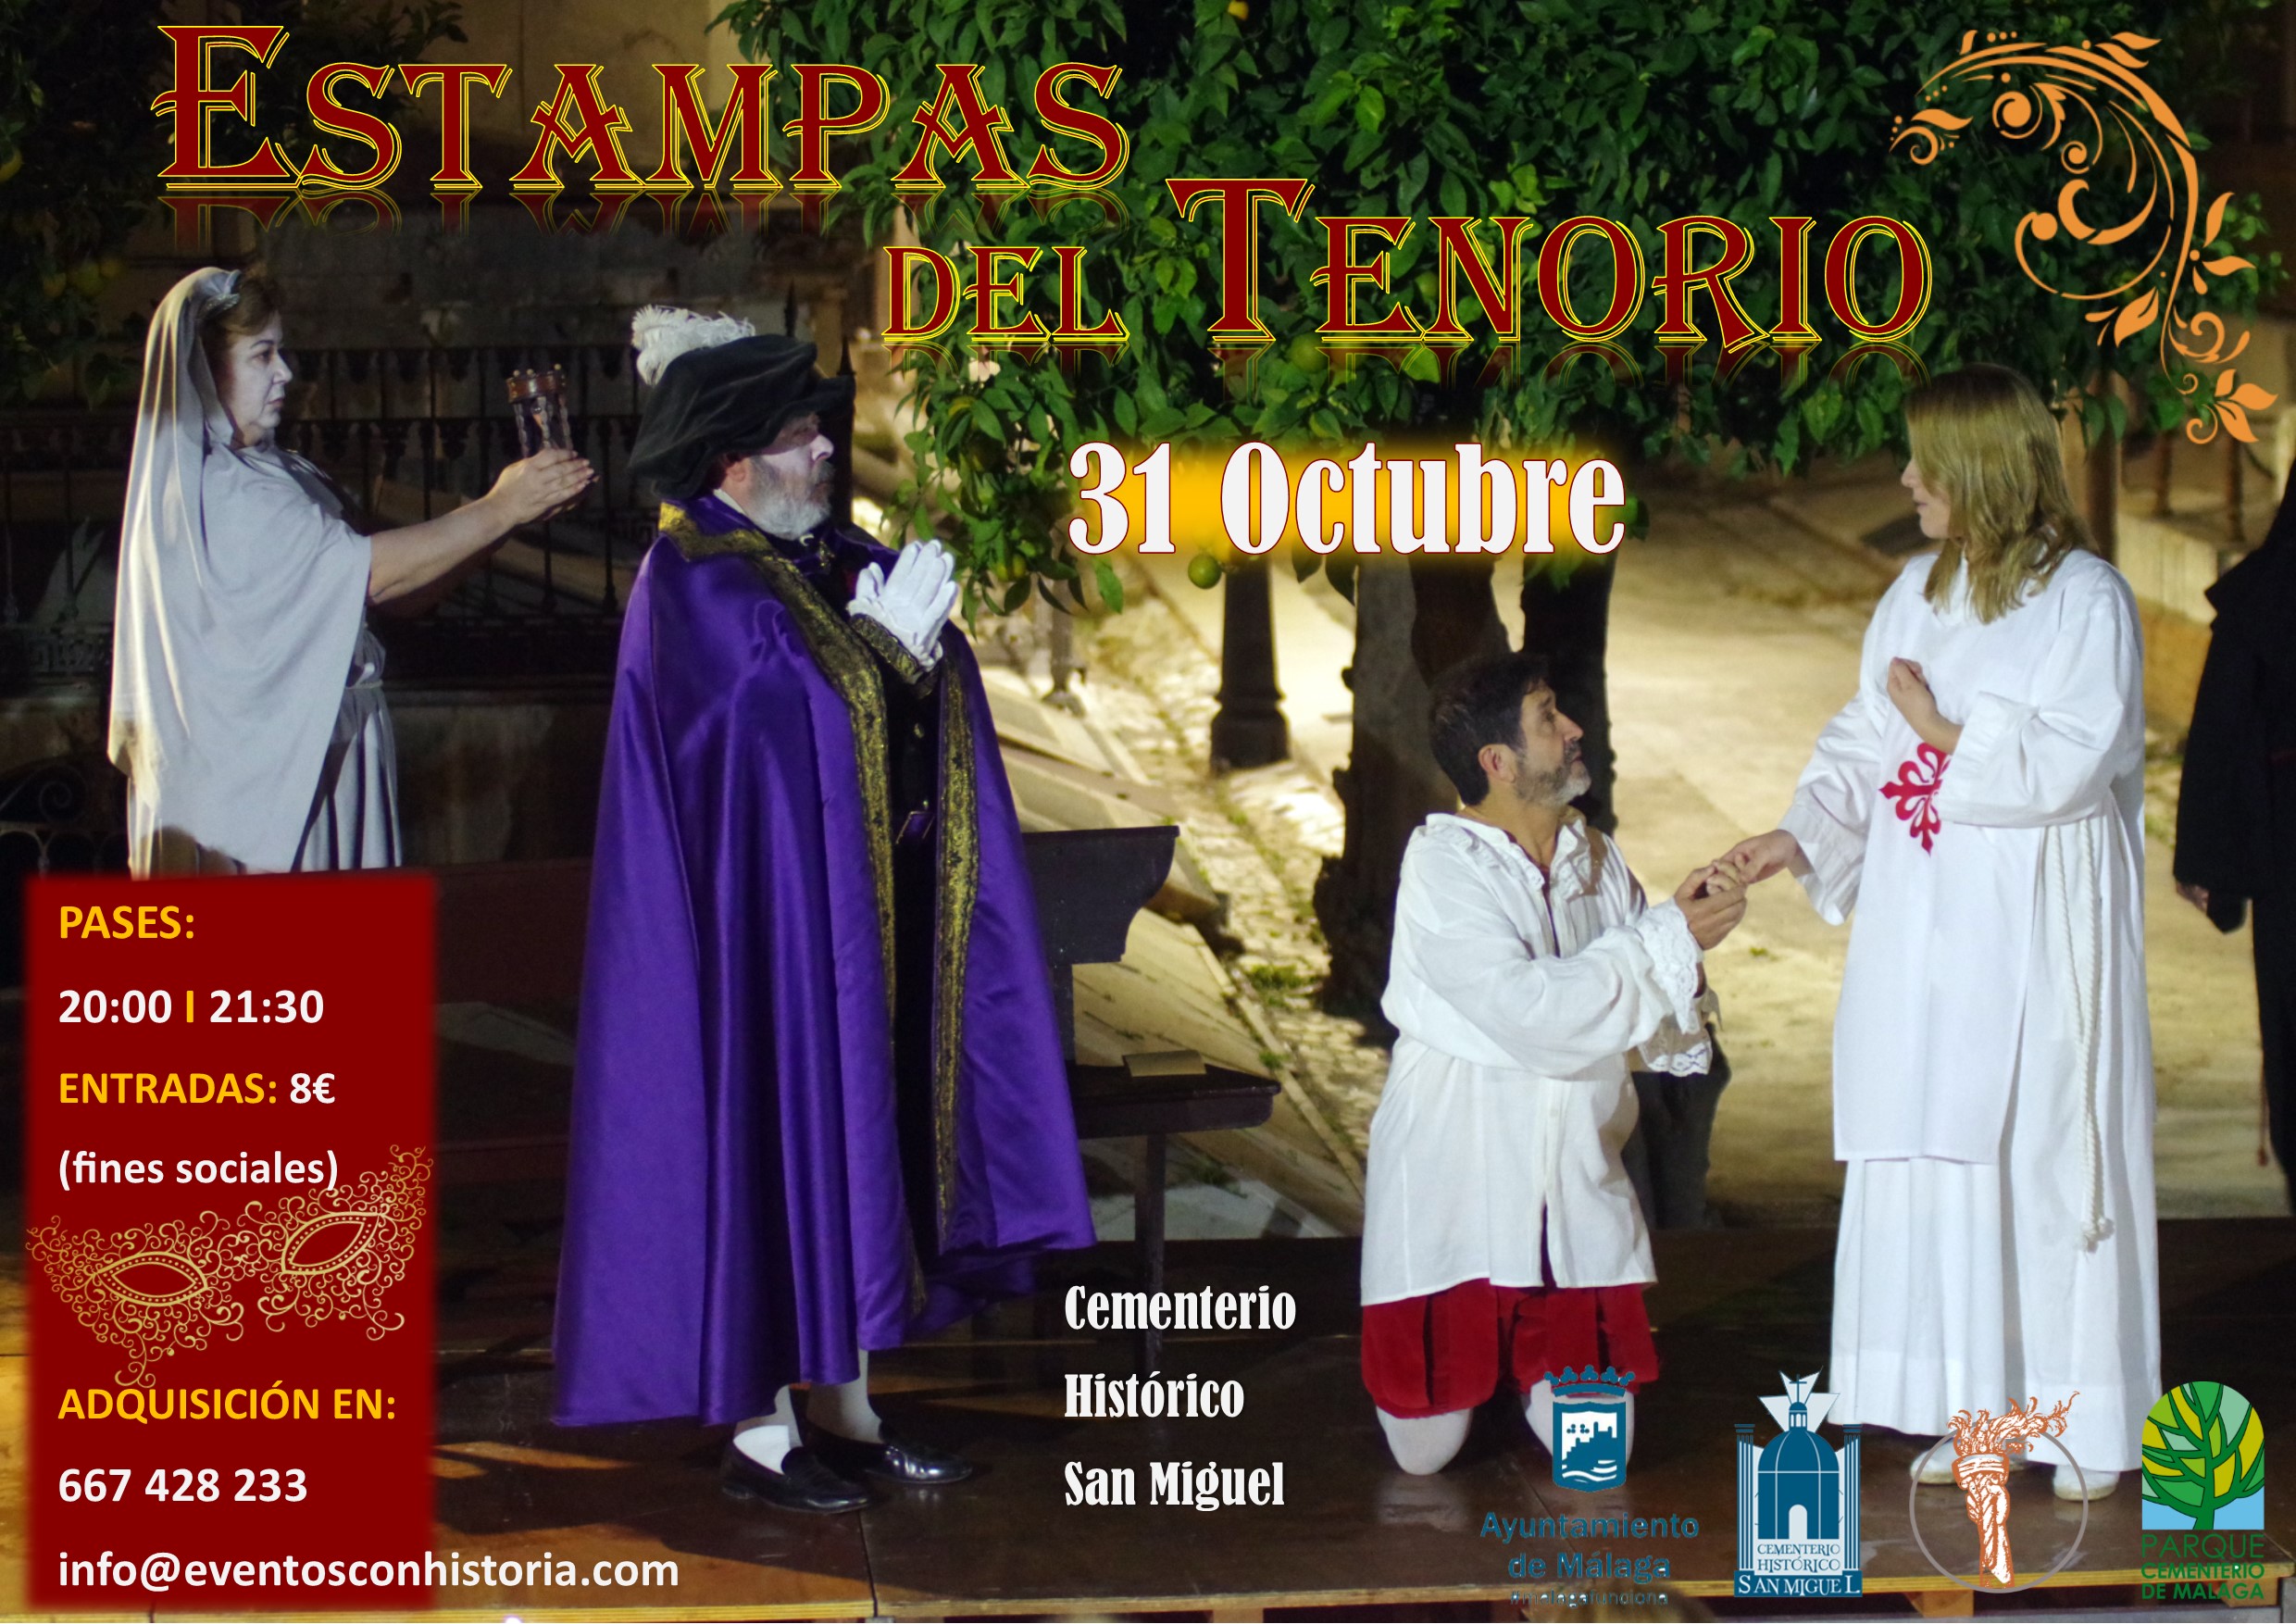 Vídeo promocional ‘Estampas del Tenorio’ en San Miguel